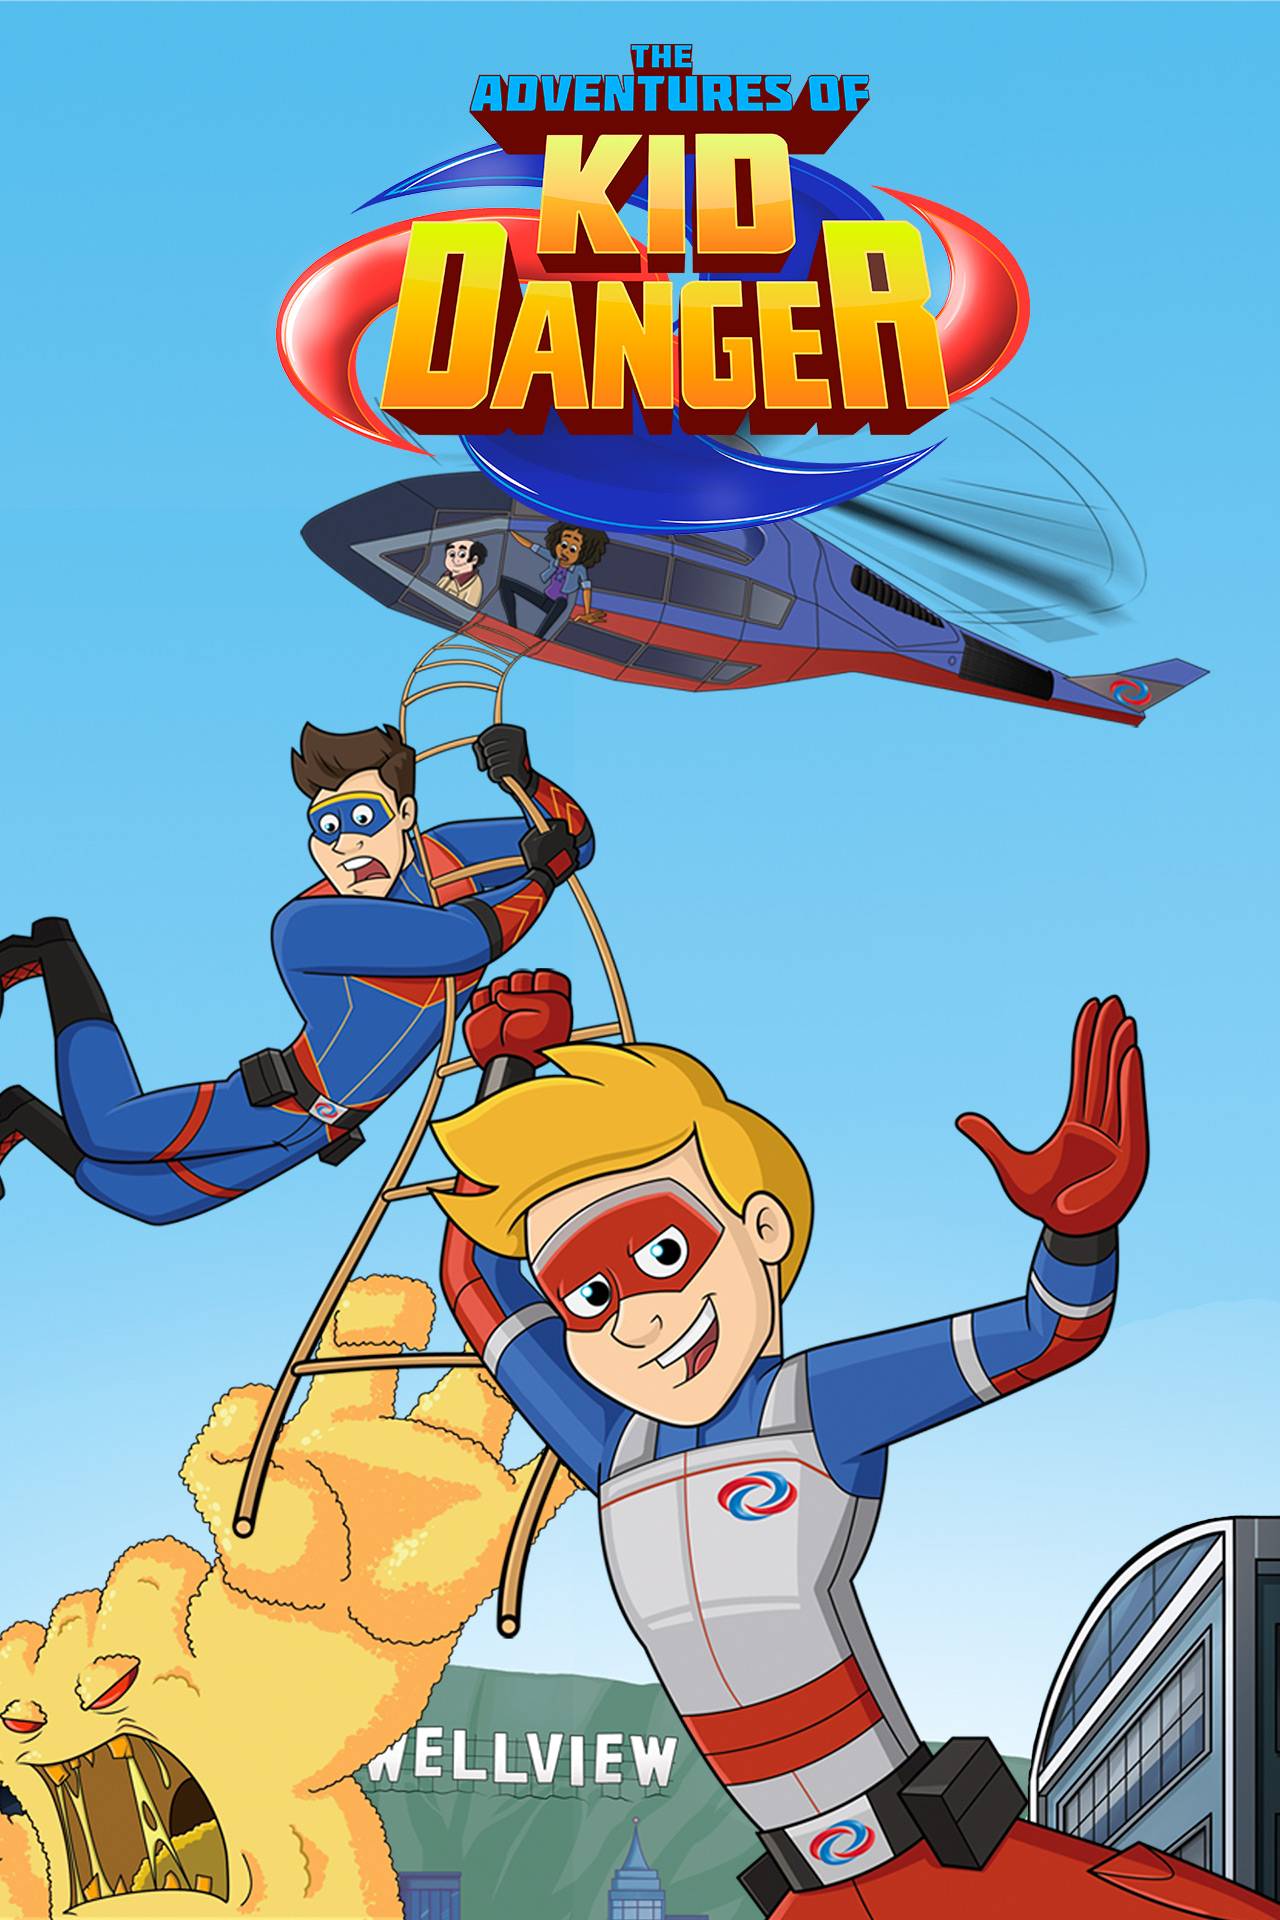 The Adventures of Kid Danger TV Series